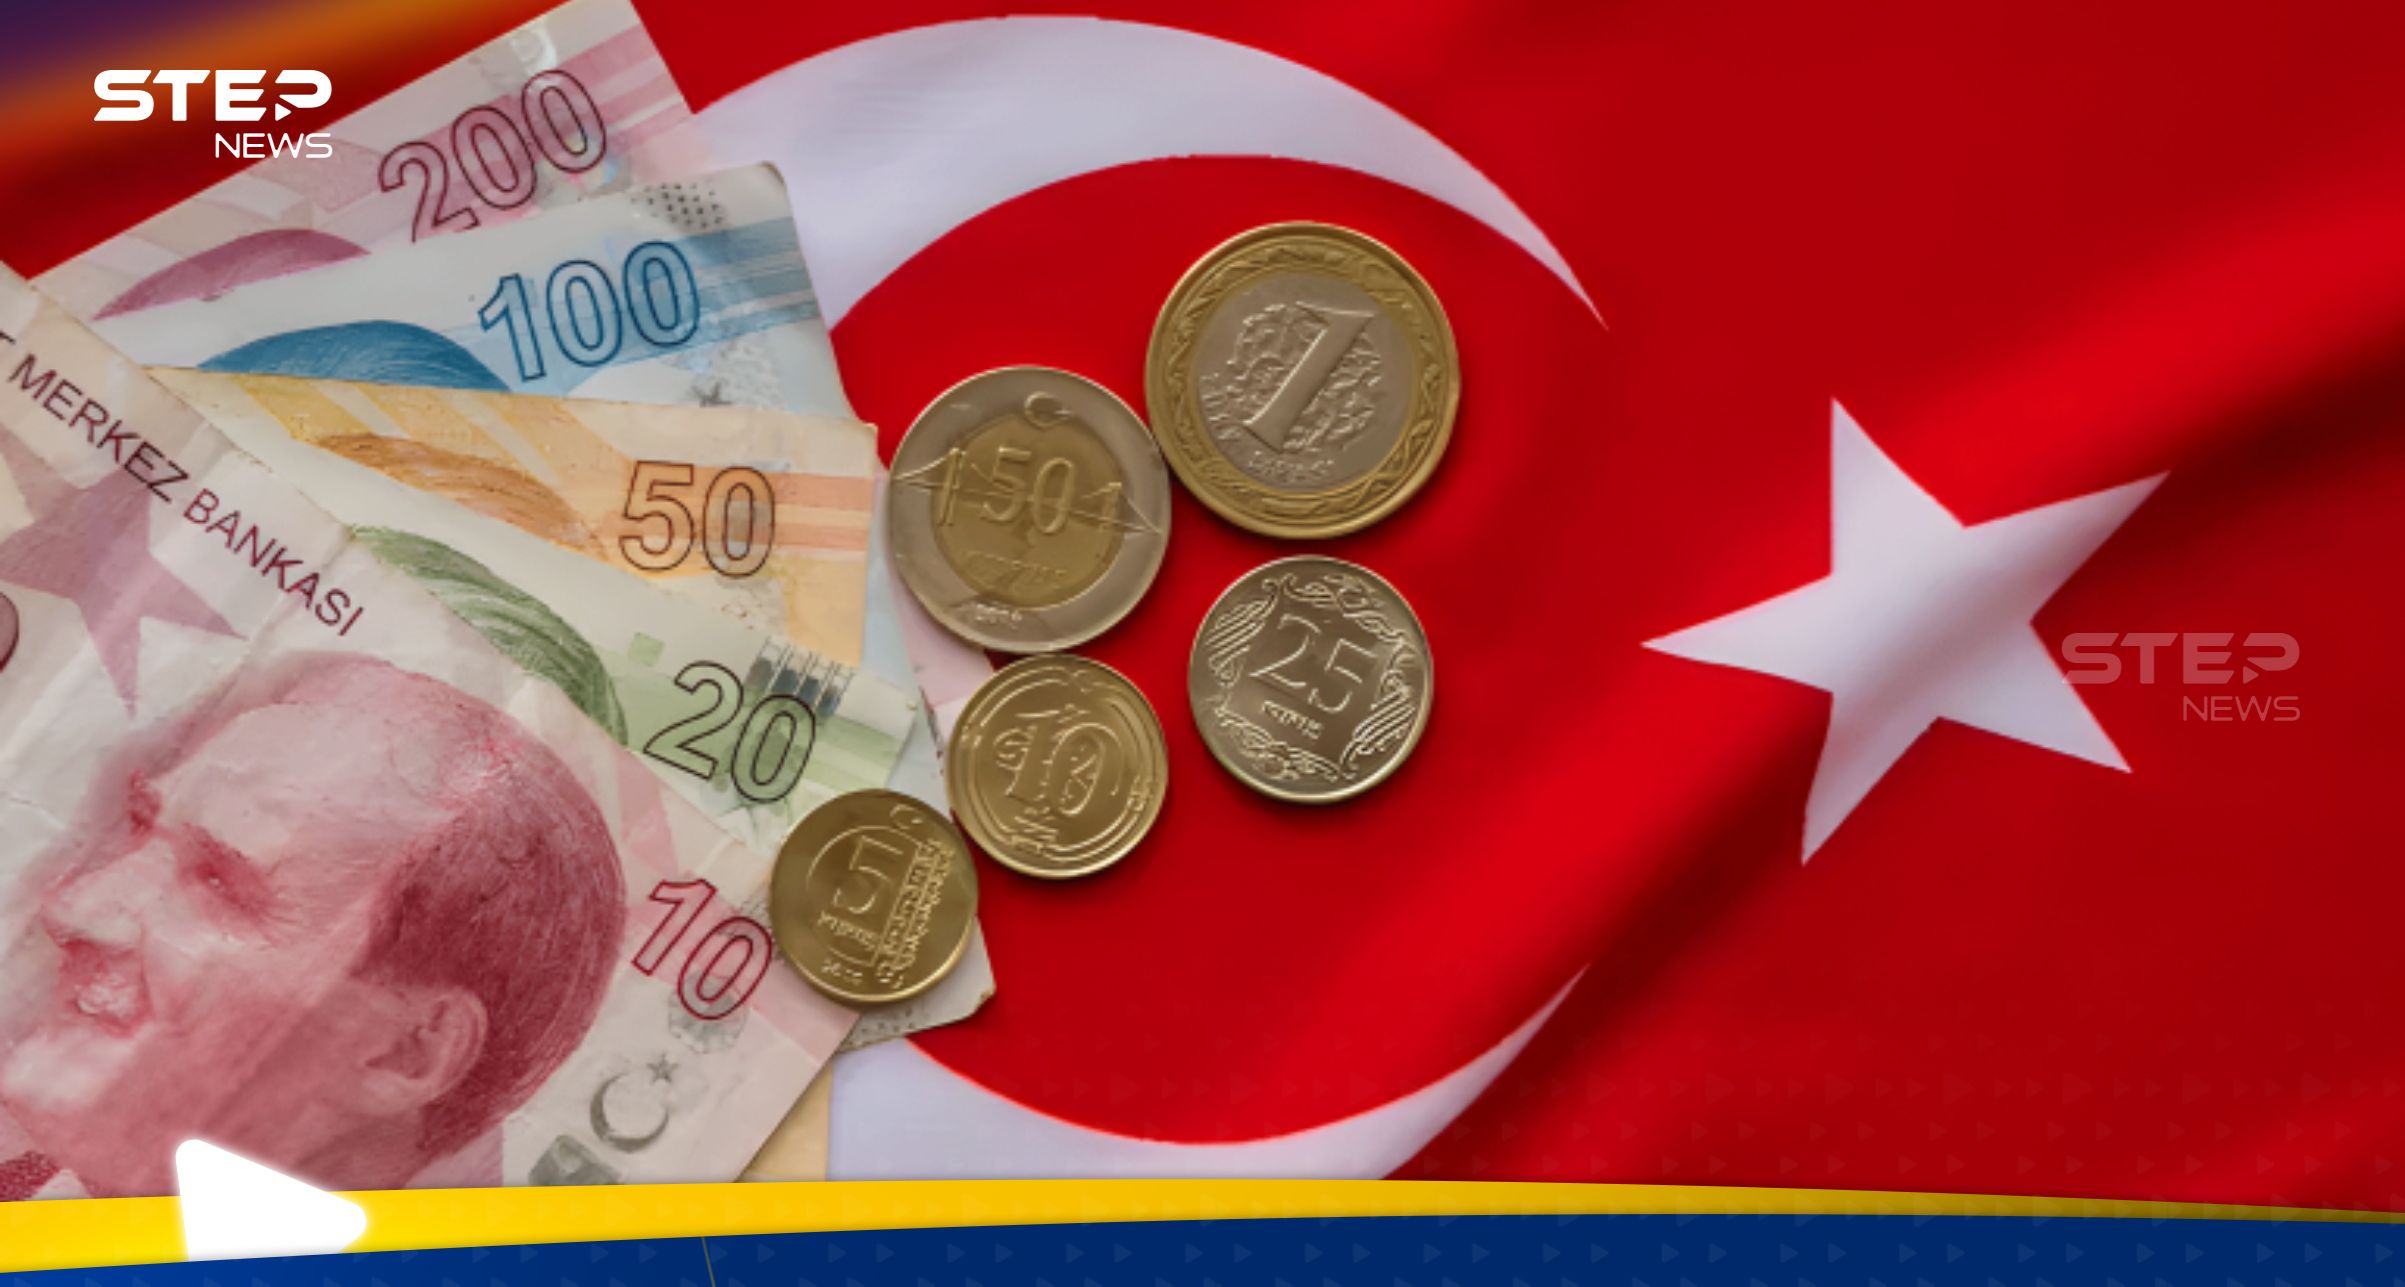 توقعات صادمة لليرة التركية وبيانات التضخم